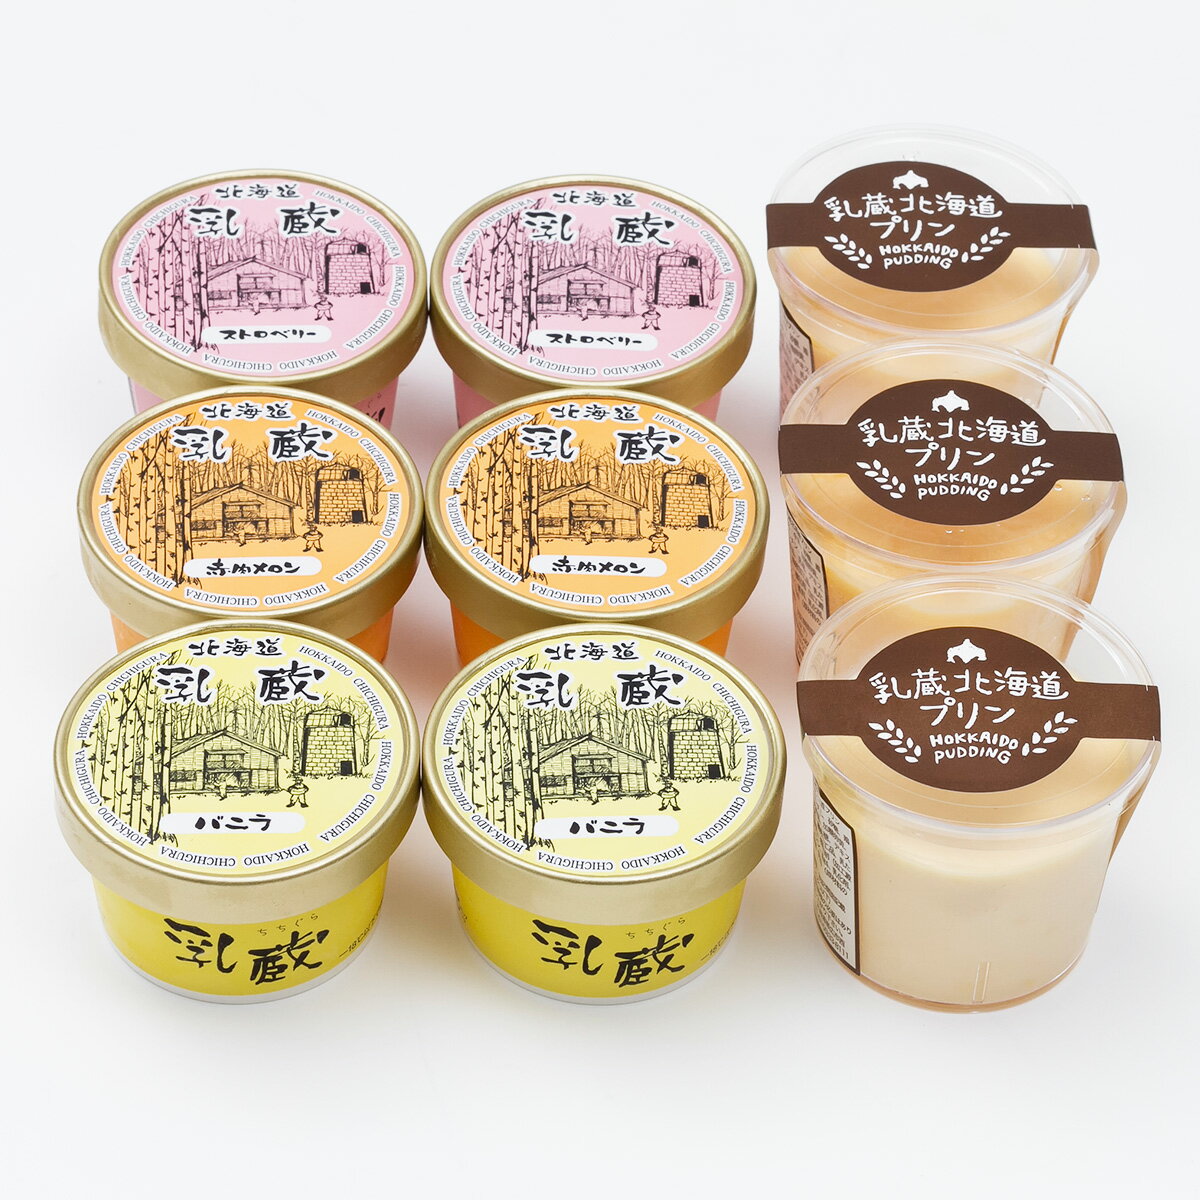 アイス 乳蔵 北海道 アイスクリーム プリン セット 詰め合わせ デザート スイーツ 洋菓子